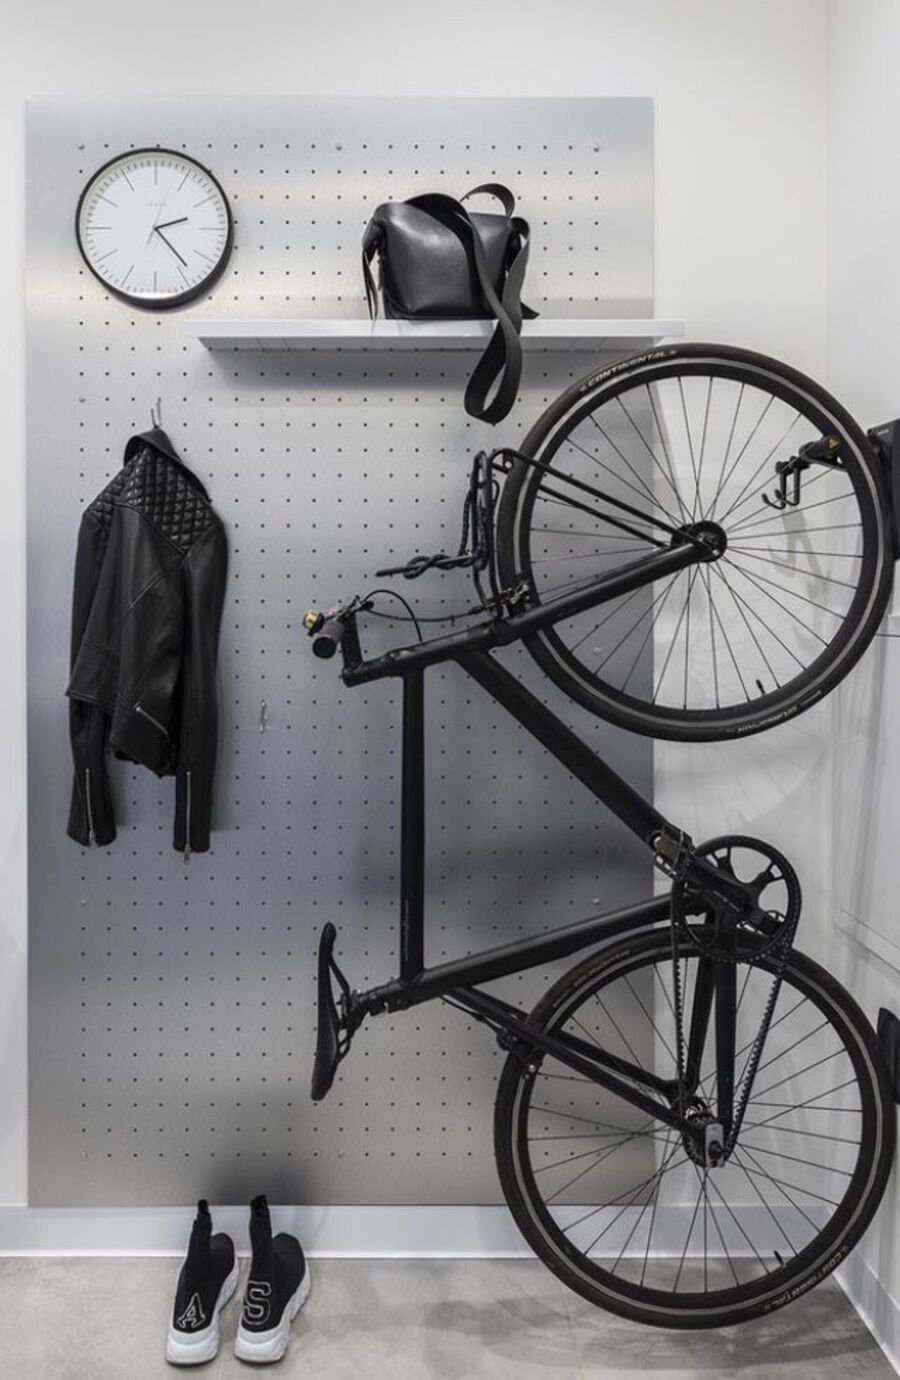 Bicicleta negra colgando desde una pared. Detrás de ella hay un recibidor con repisa, reloj y colgador.